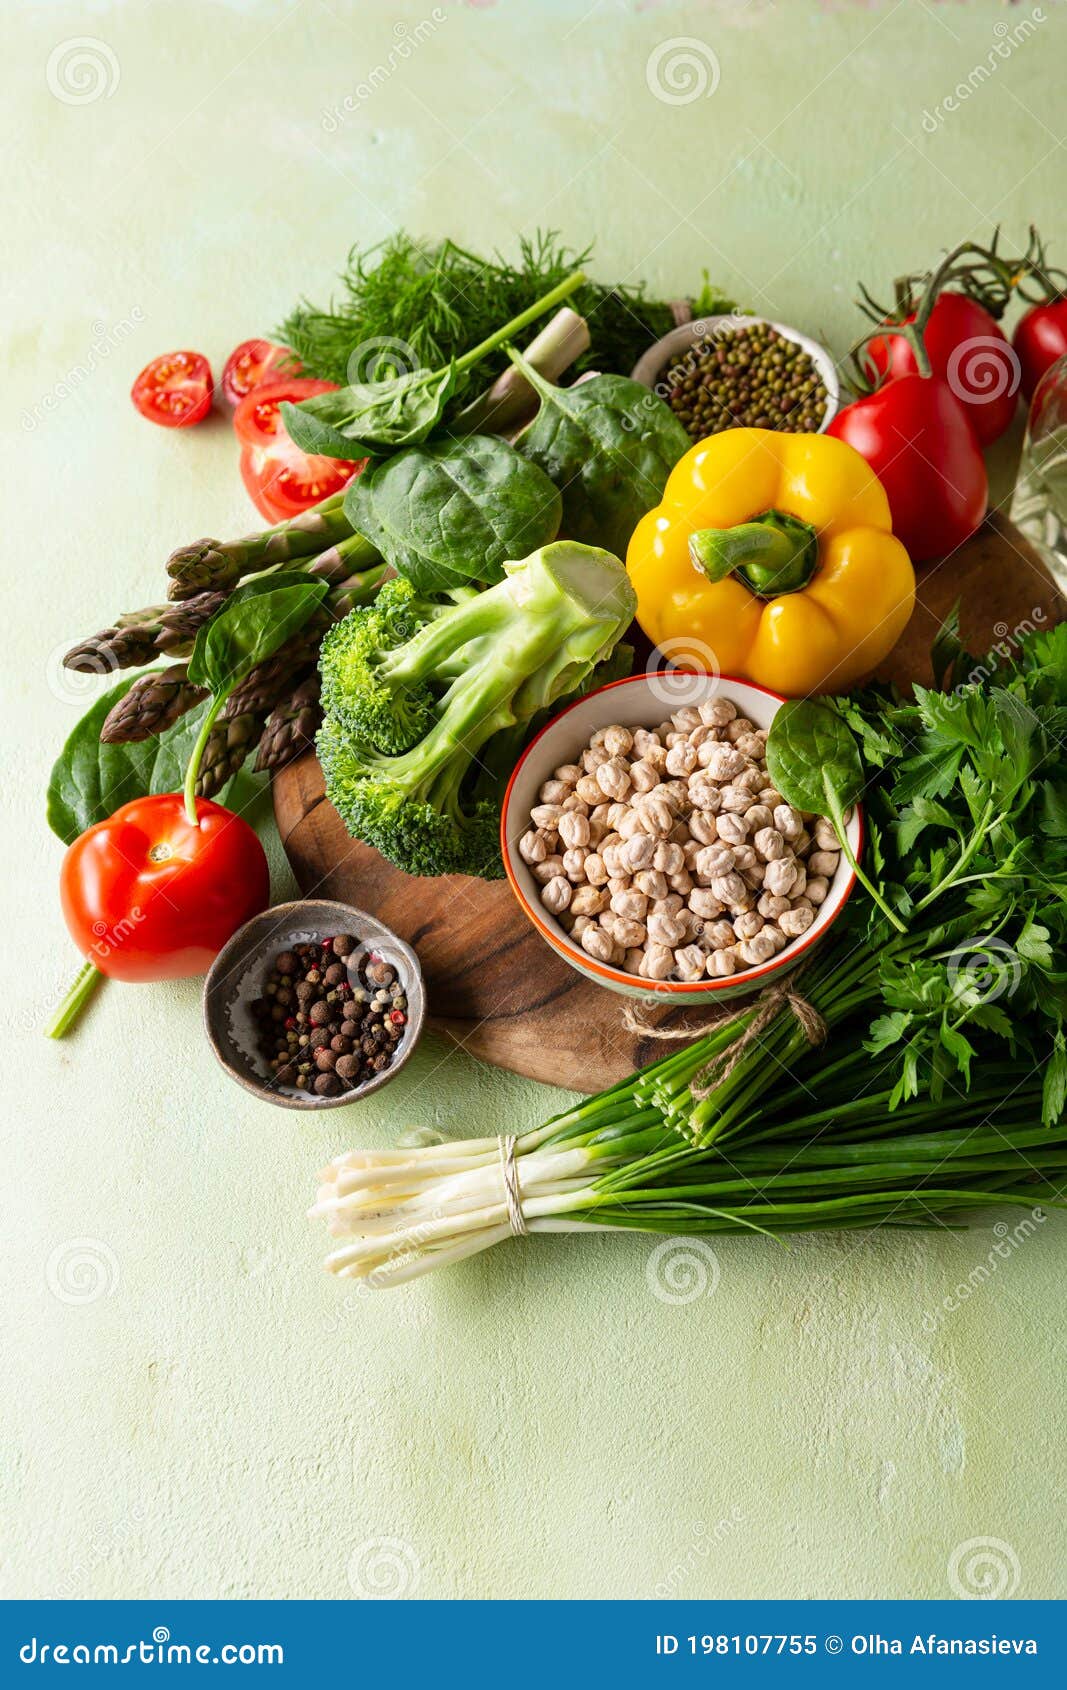 Conjunto De Alimentos Sanos Alimentos Limpios Y Verduras Verdes Imagen De Archivo Imagen De 1289